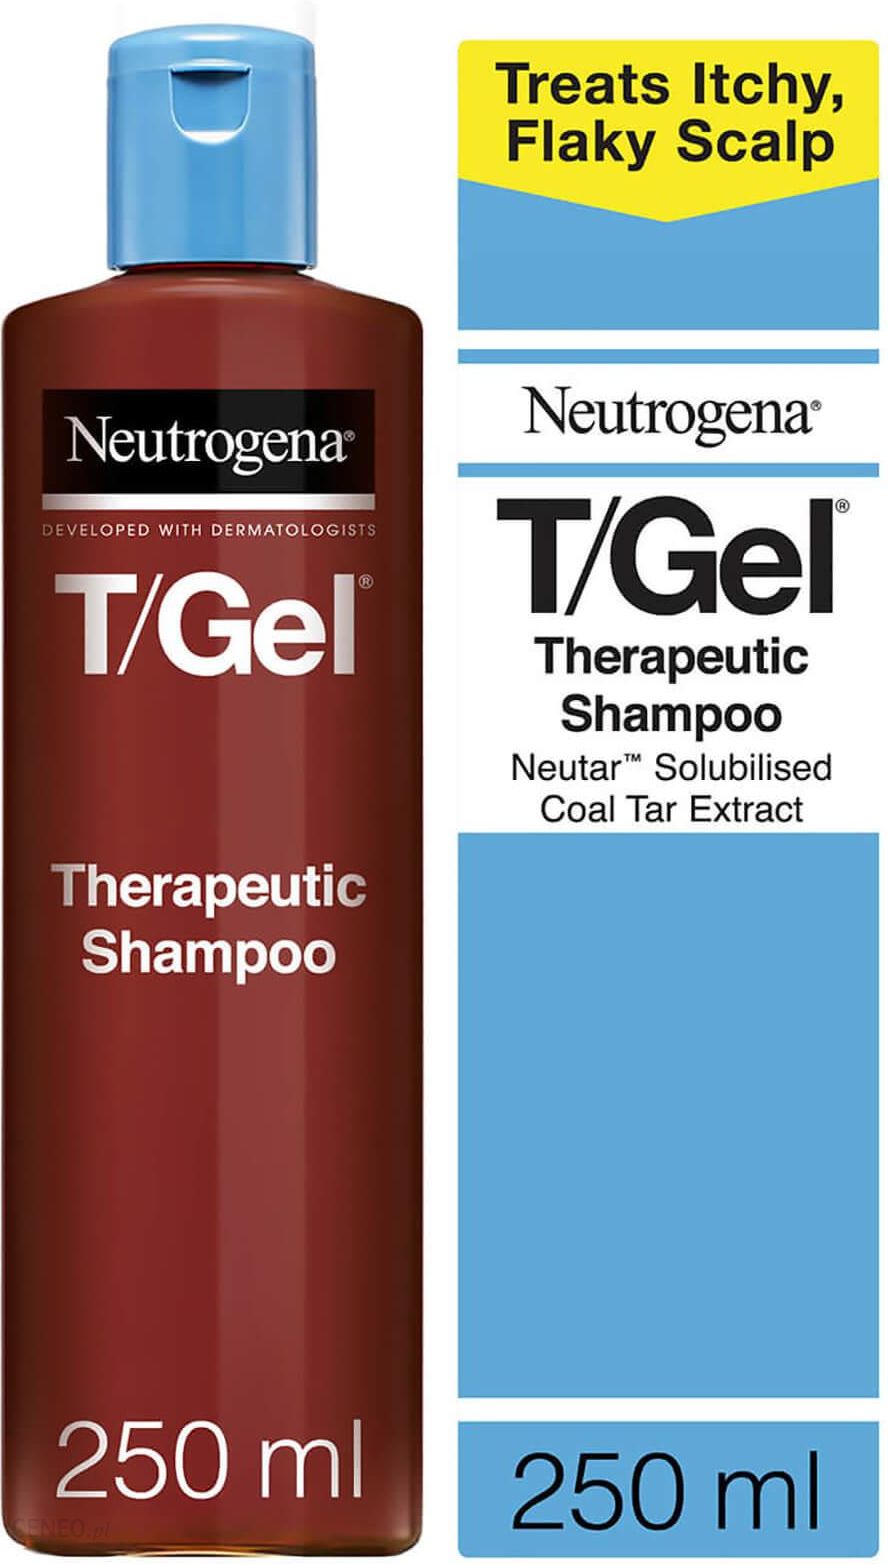 t gel neutrogena szampon leczniczy opinie